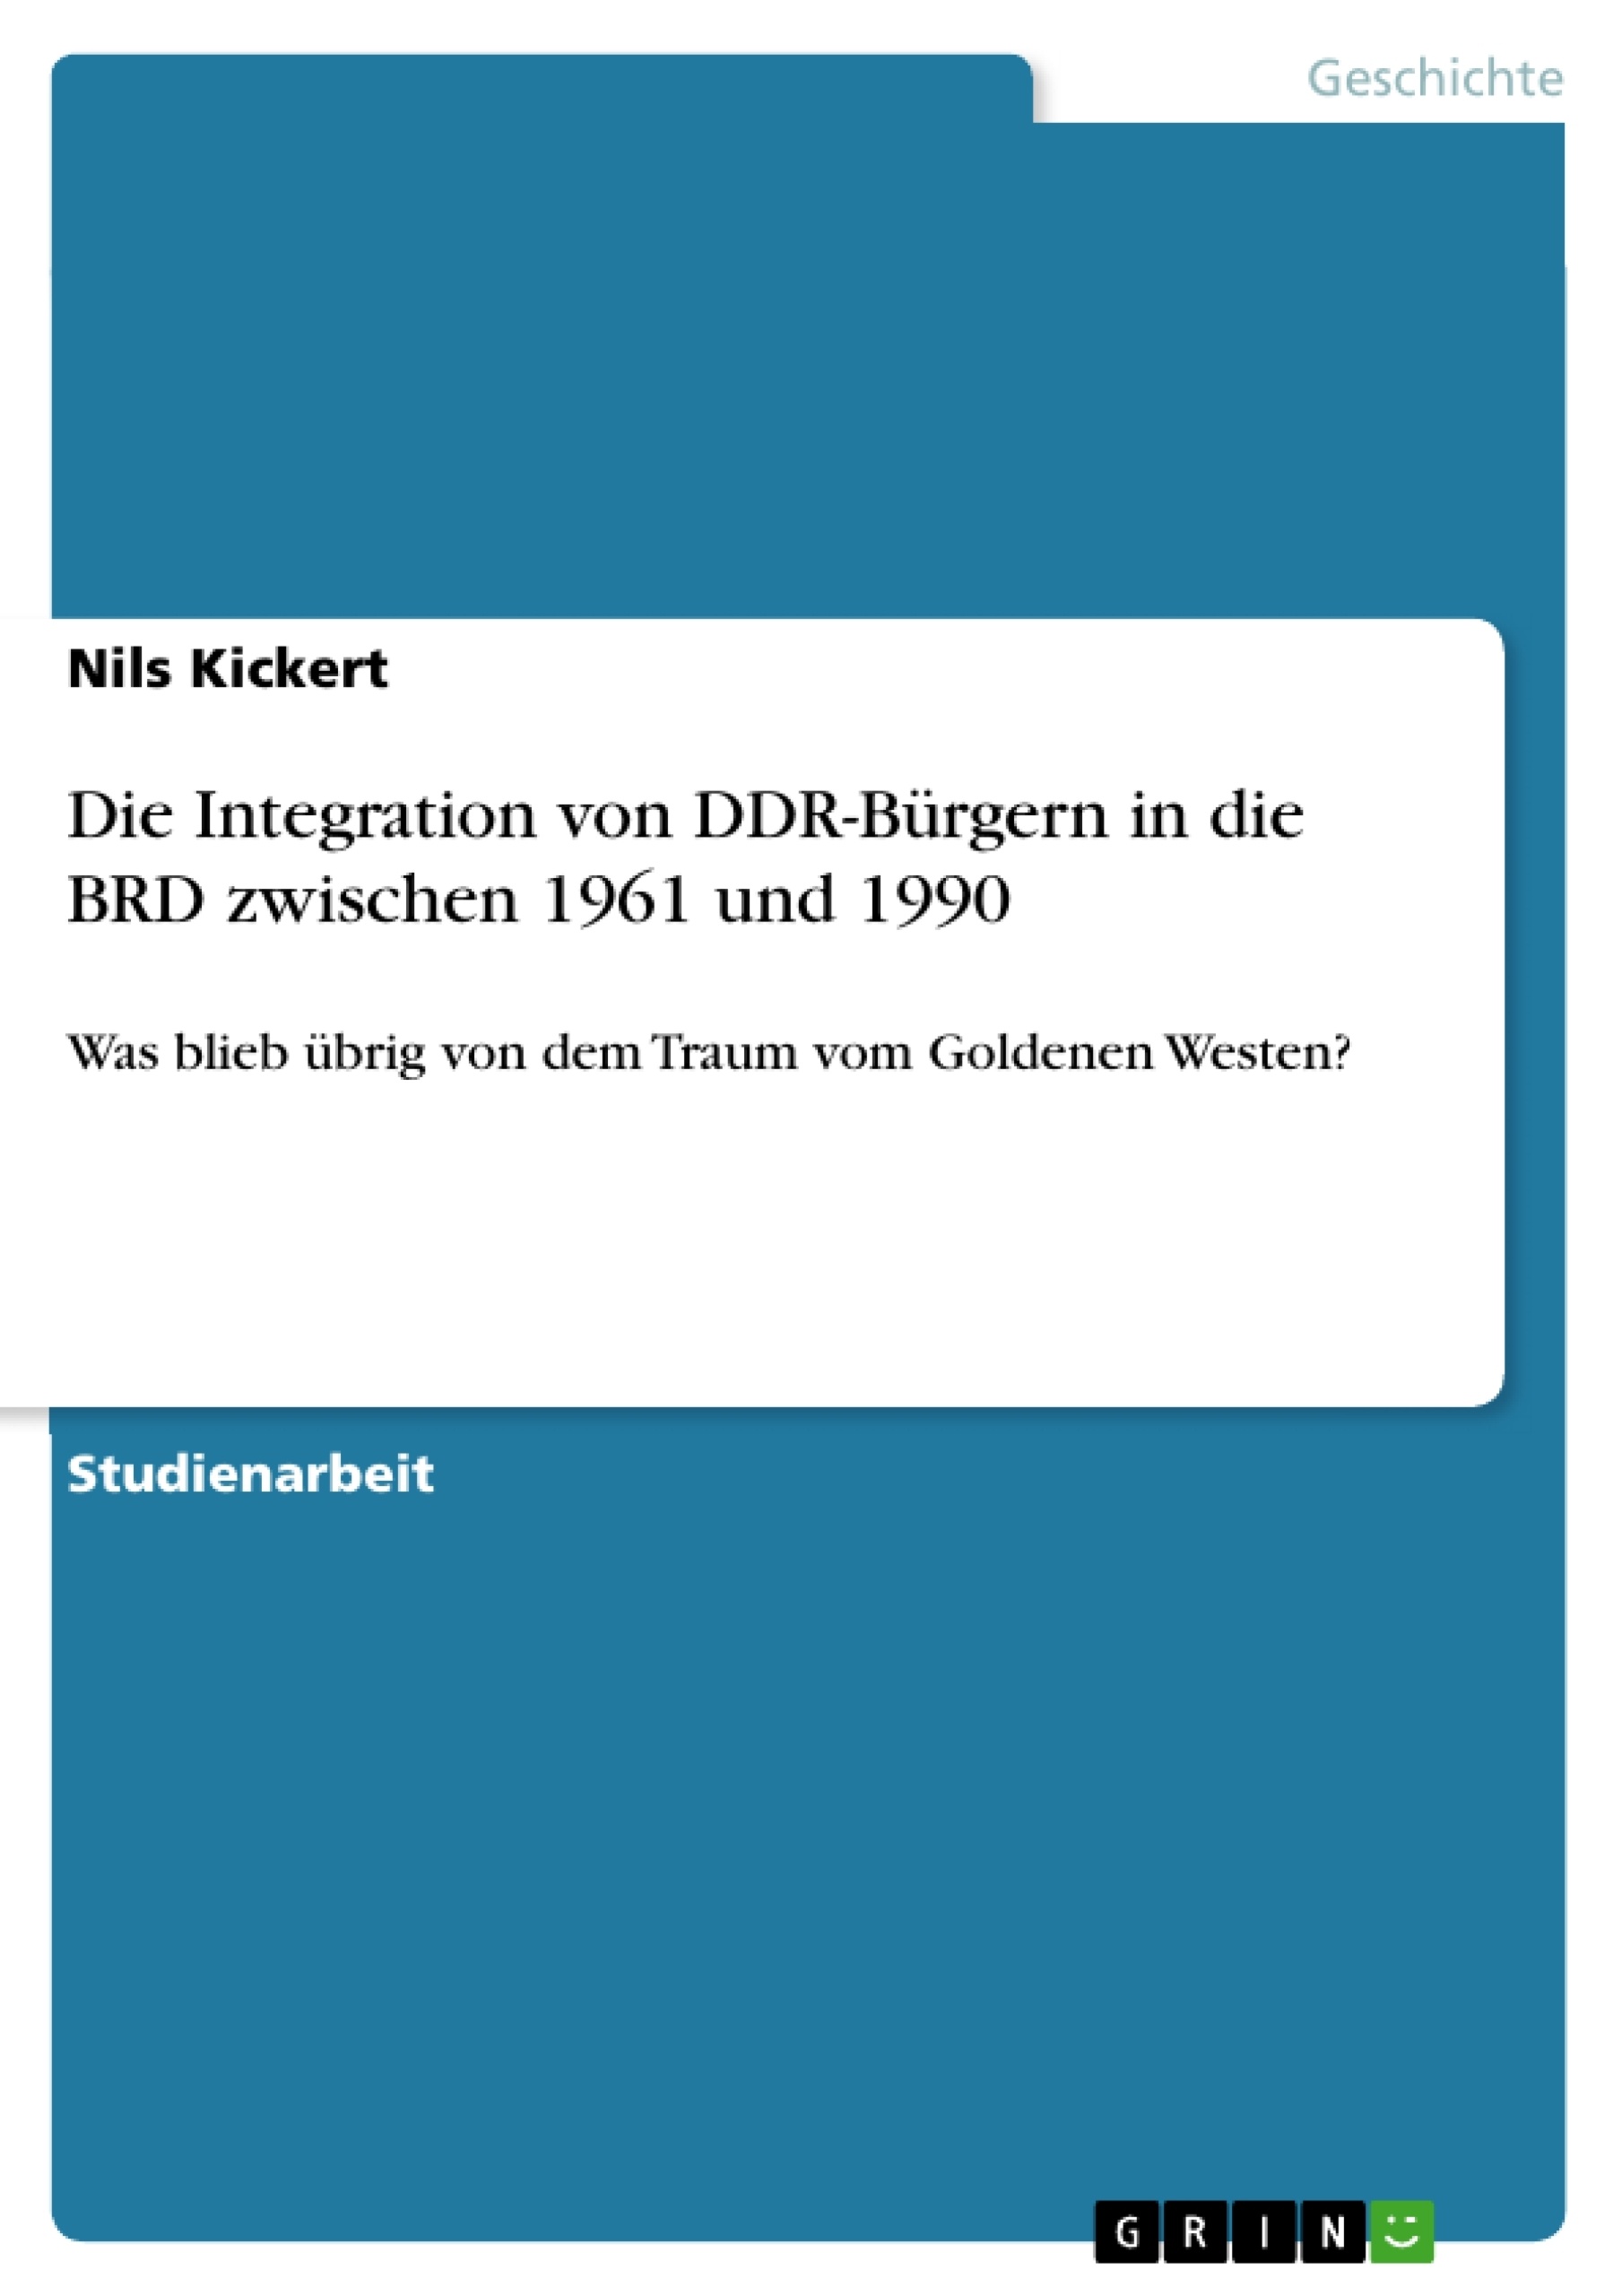 Title: Die Integration von DDR-Bürgern in die BRD zwischen 1961 und 1990